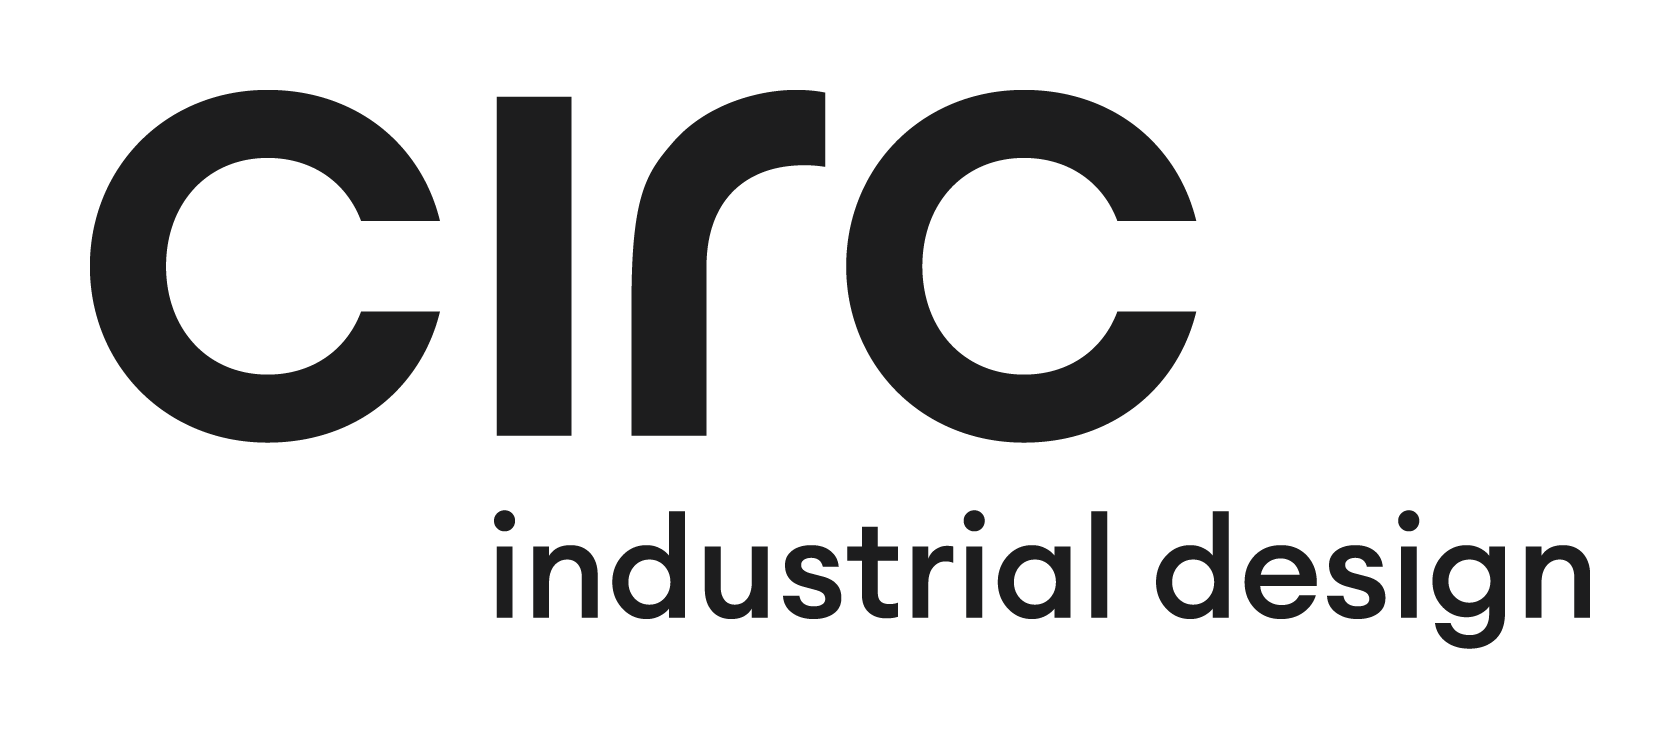 Circ Industrial Design